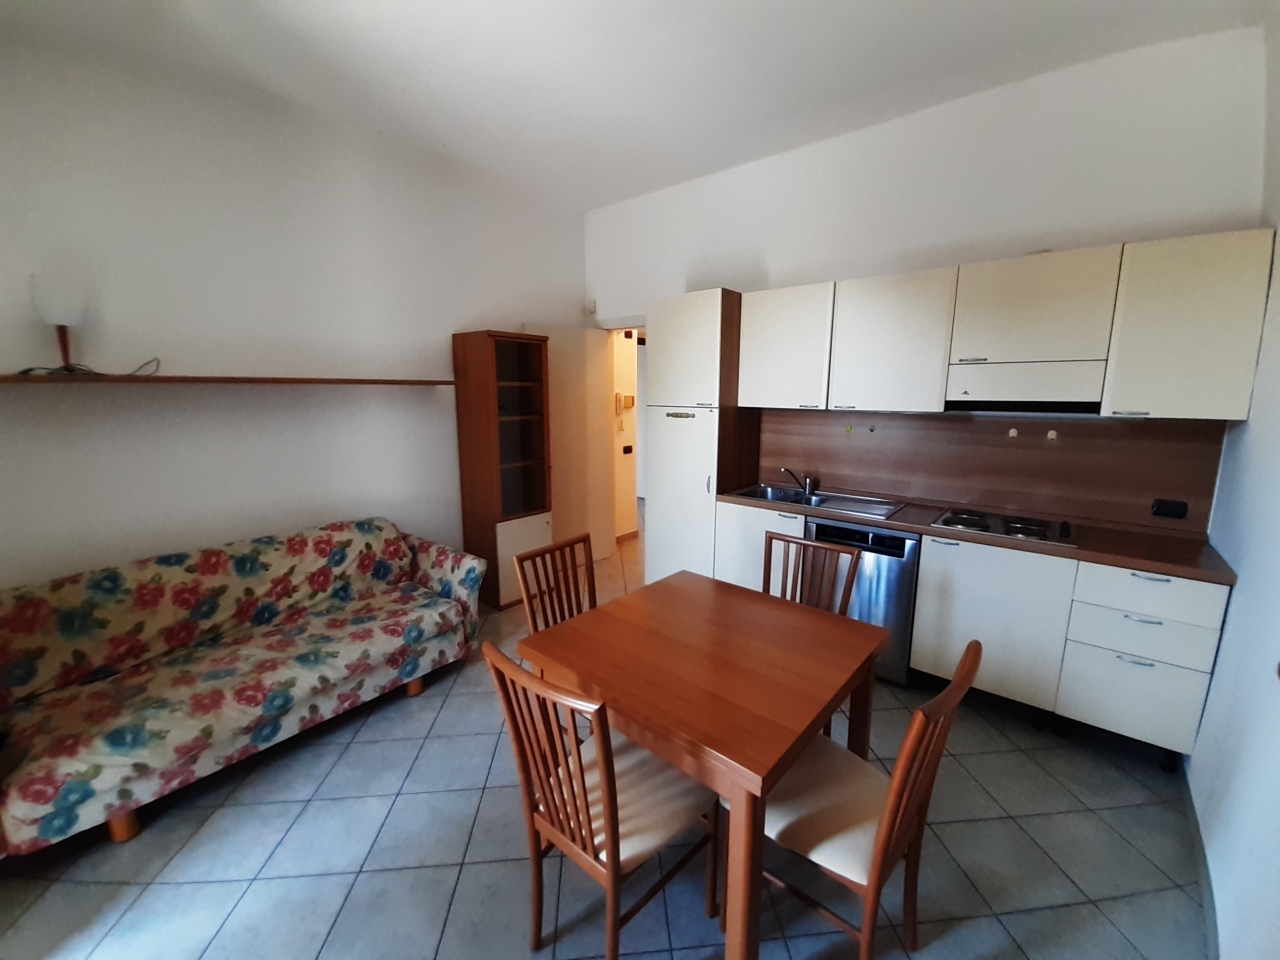 Appartamento in affitto a Somma Lombardo, 2 locali, prezzo € 450 | PortaleAgenzieImmobiliari.it